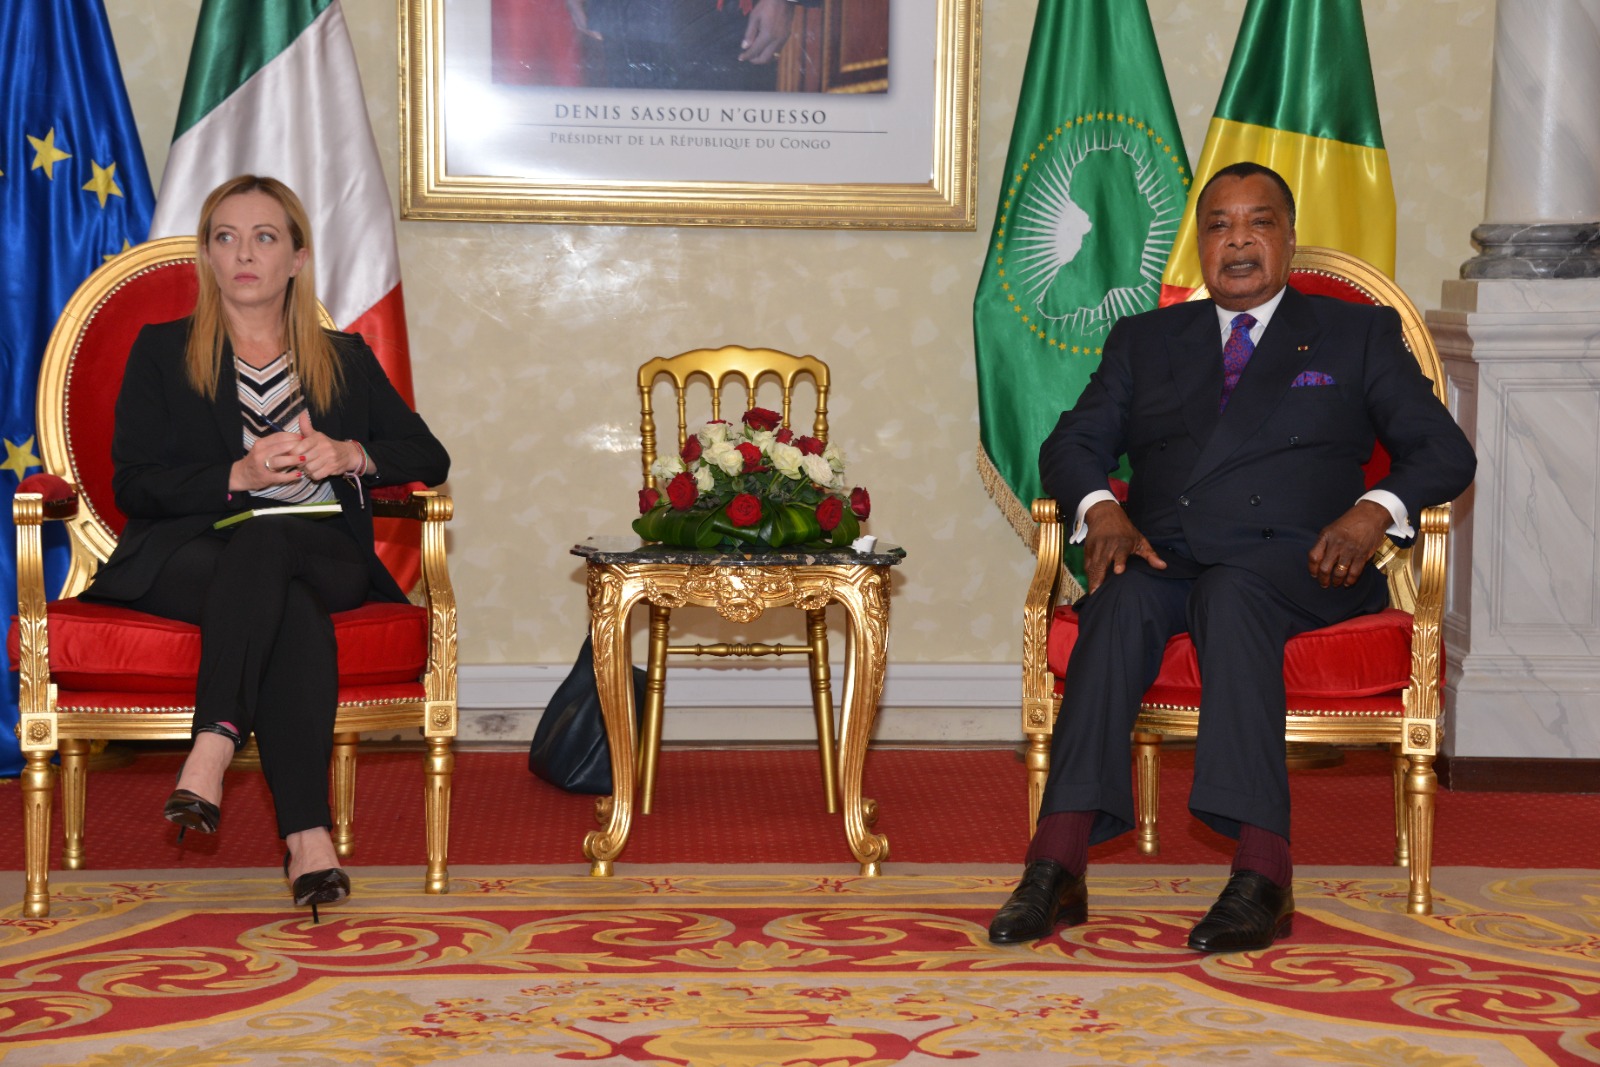 Diplomatie : l’ère d’une coopération gagnant-gagnant entre l’Italie et le Congo